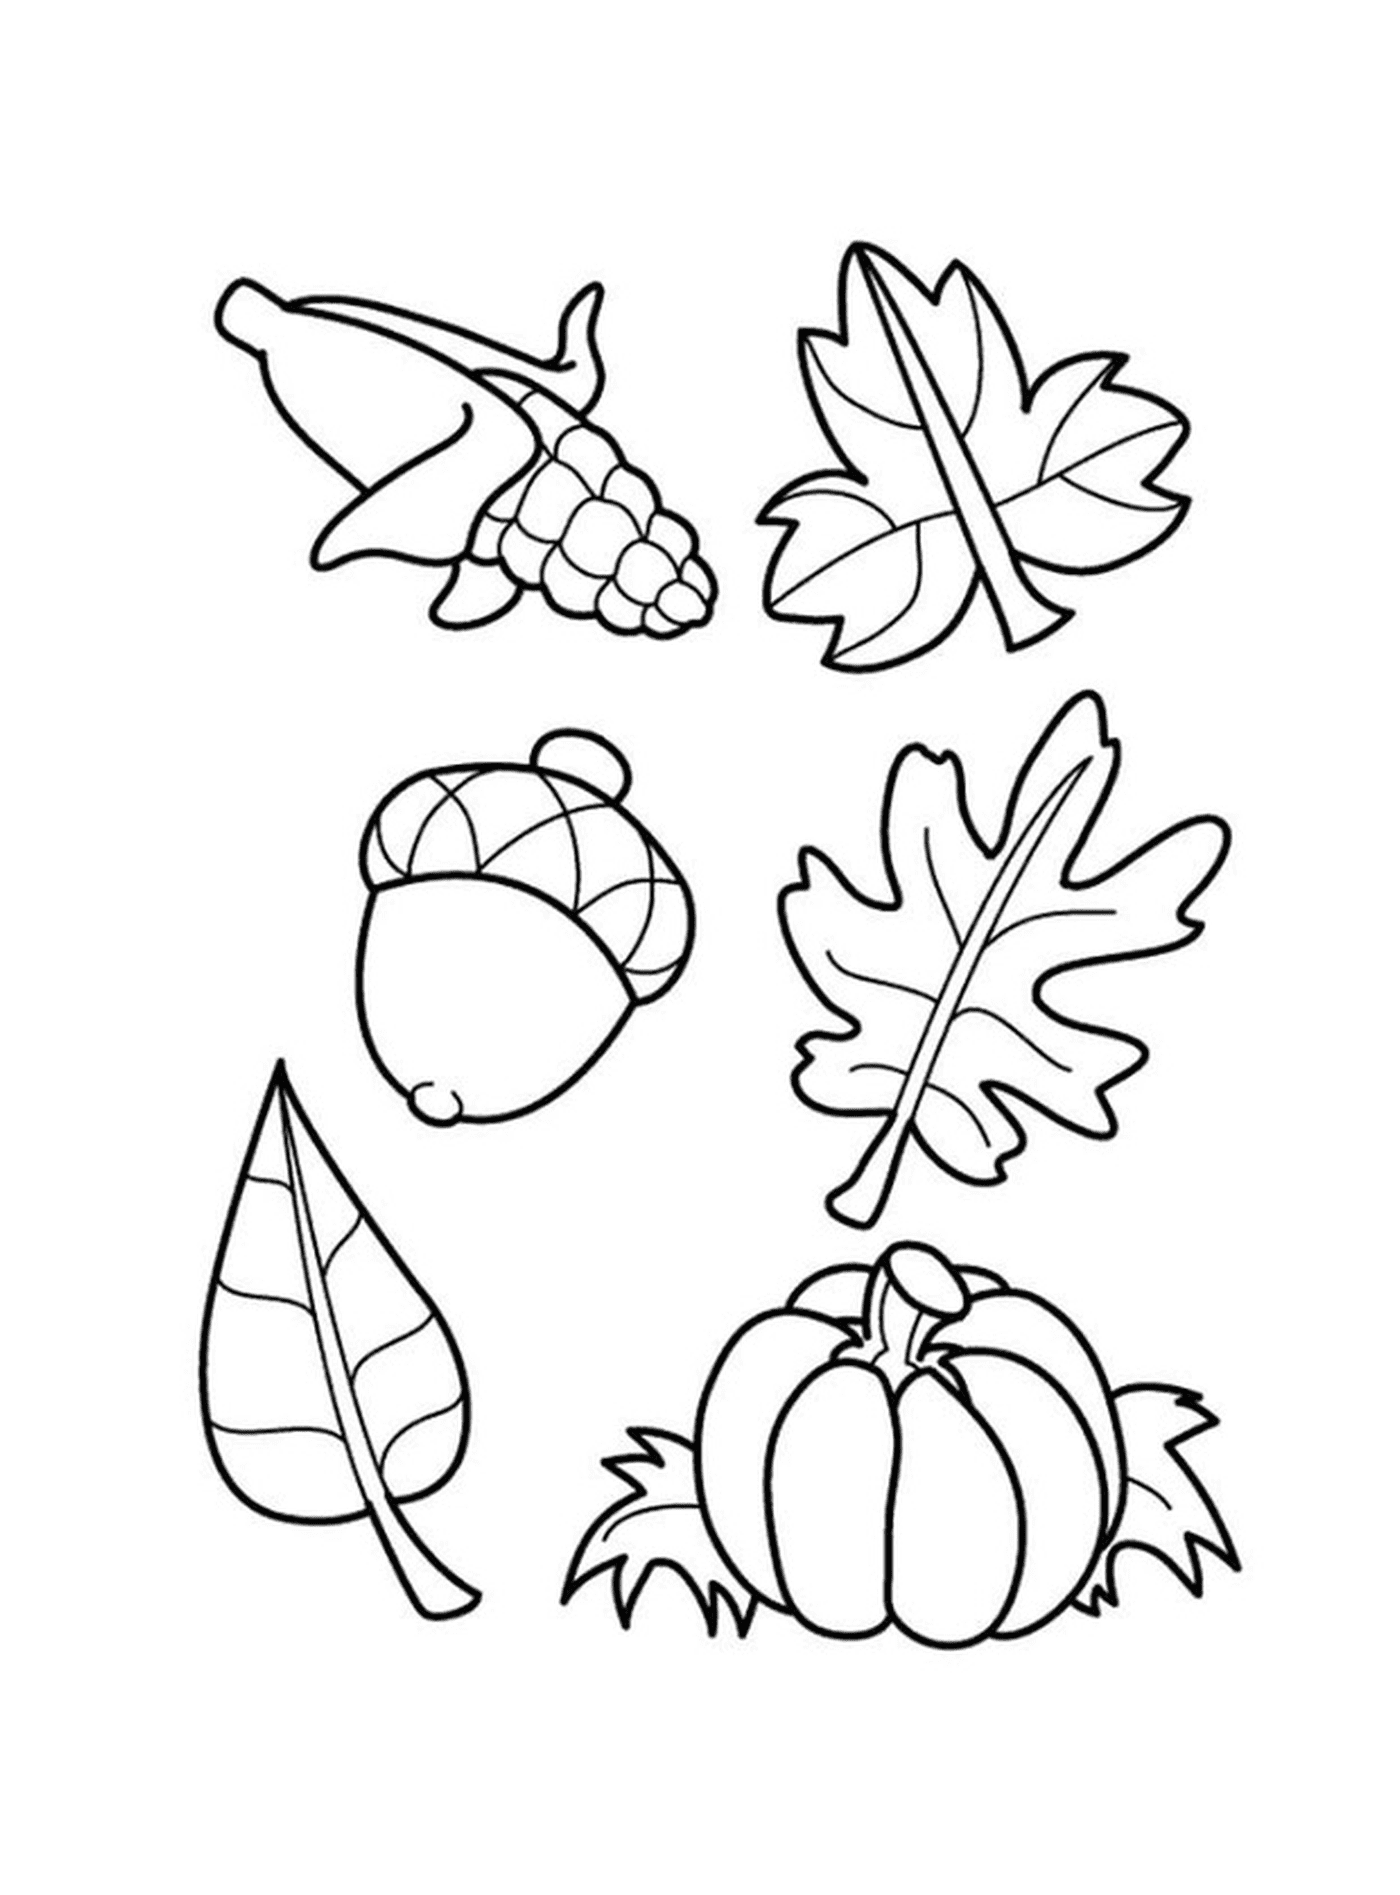  Diversi tipi di foglie 